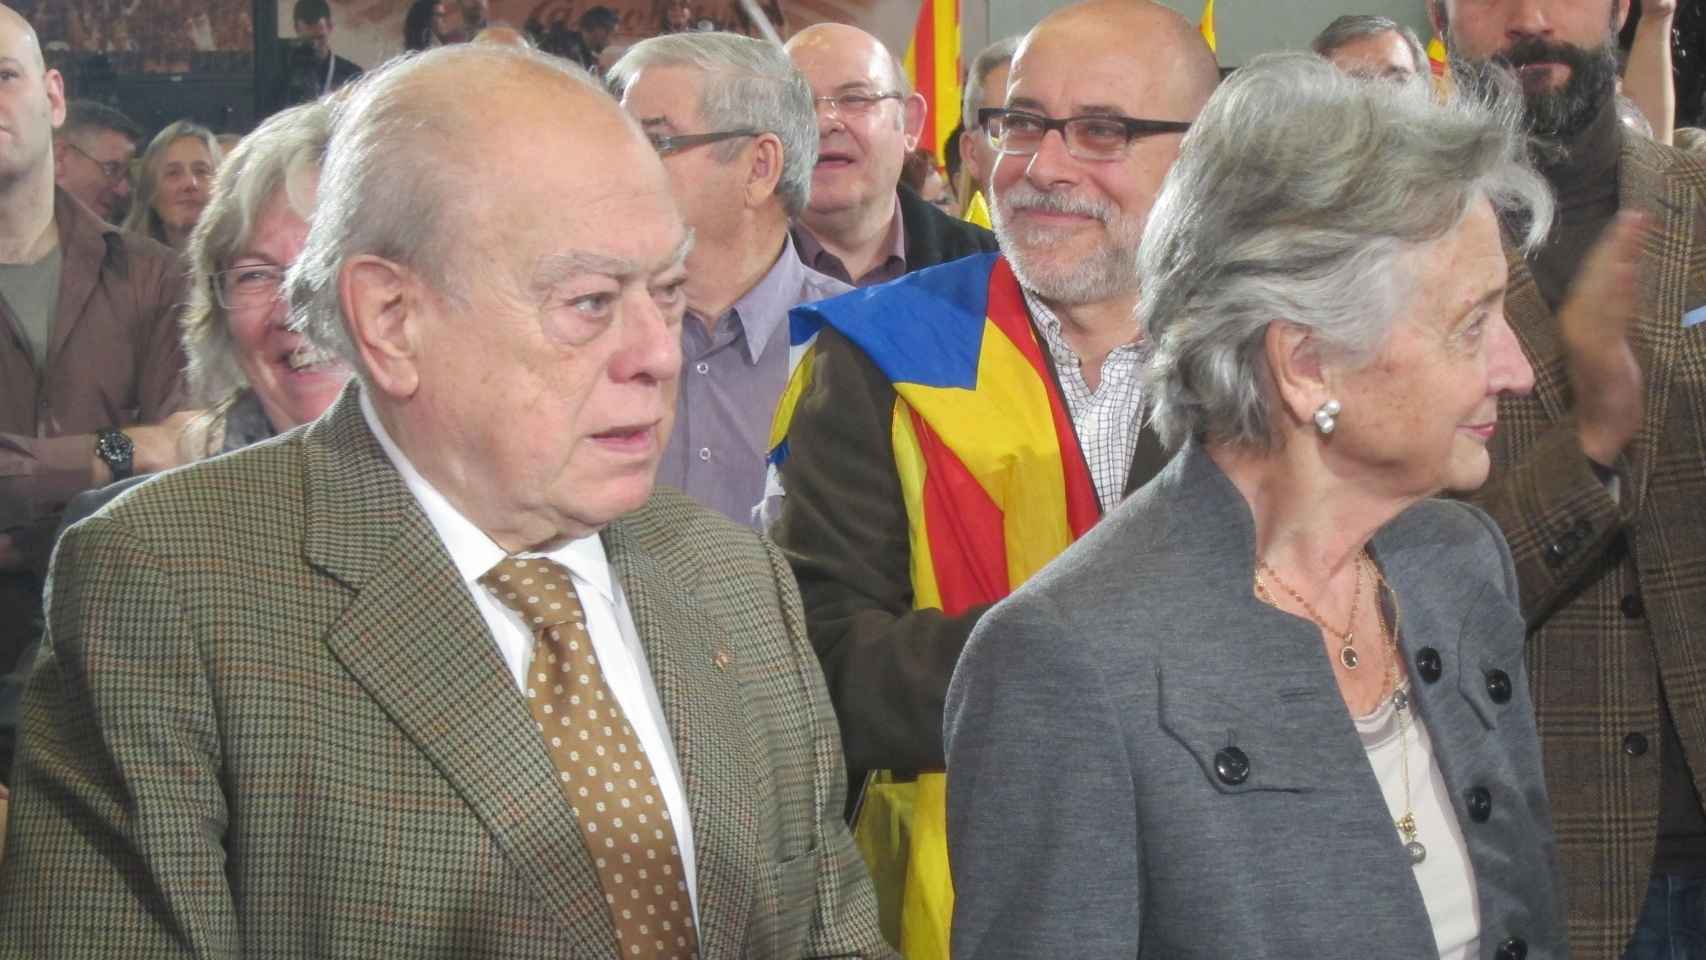 El 'expresident' Jordi Pujol (i) junto a su esposa Marta Ferrusola (d), en una imagen de archivo / EUROPA PRESS